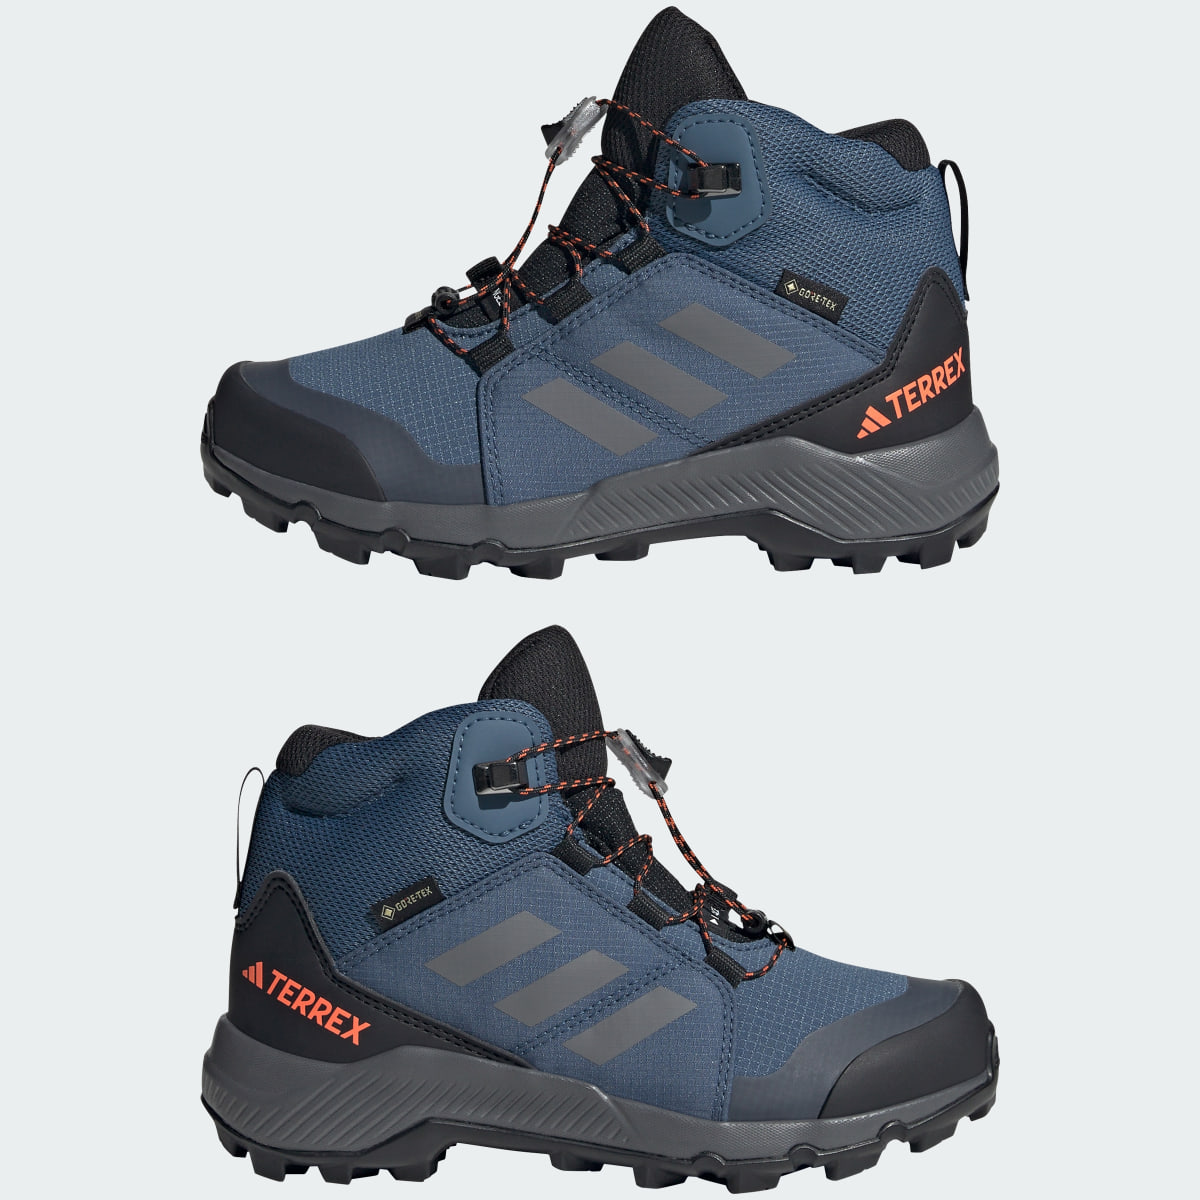 Adidas Sapatilhas de Caminhada GORE-TEX Organiser Mid. 9